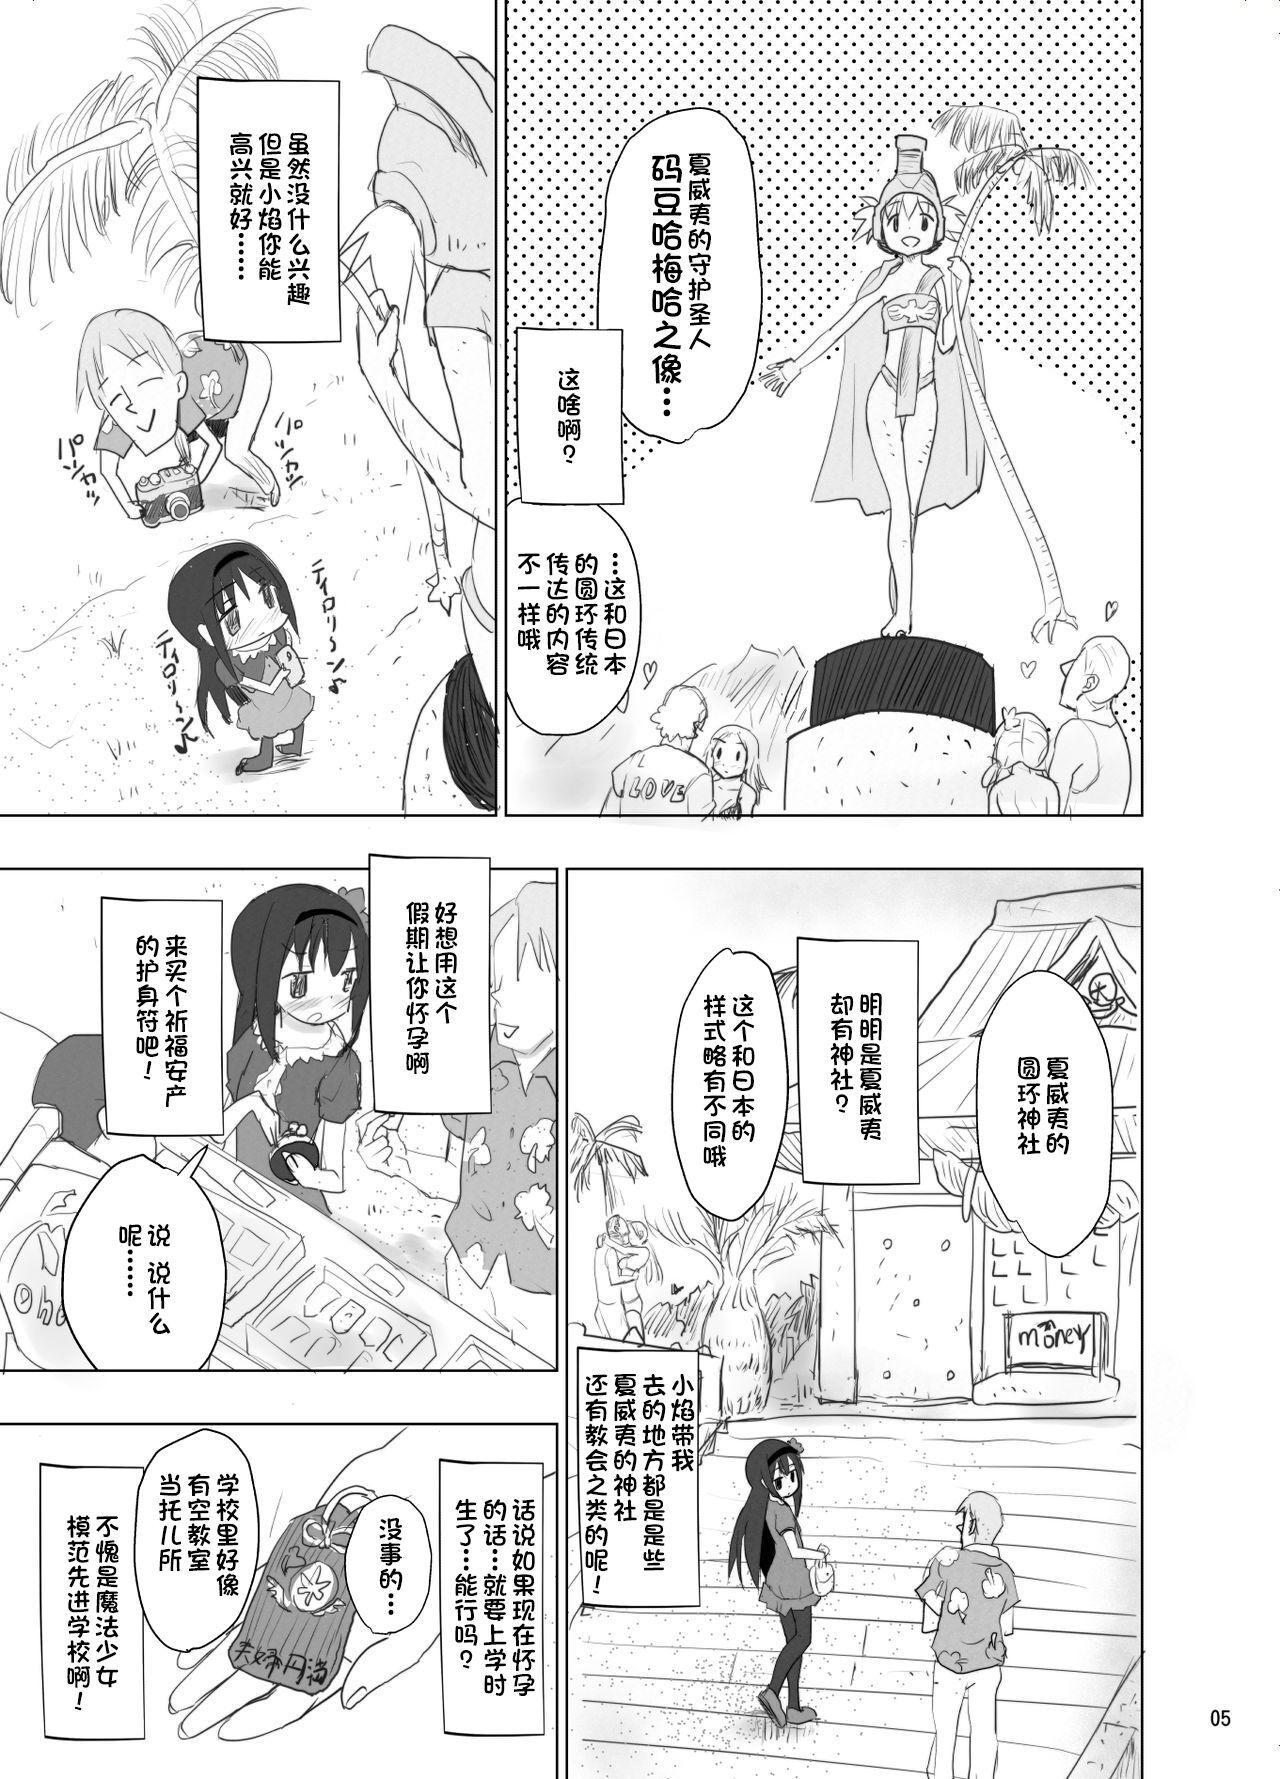 Pussyfucking Anata no Koto ga Daisuki na Homura-chan to Iku Shuudan Roshutsu Shinkon Ryokou Hawaii!! - Puella magi madoka magica Negra - Page 5